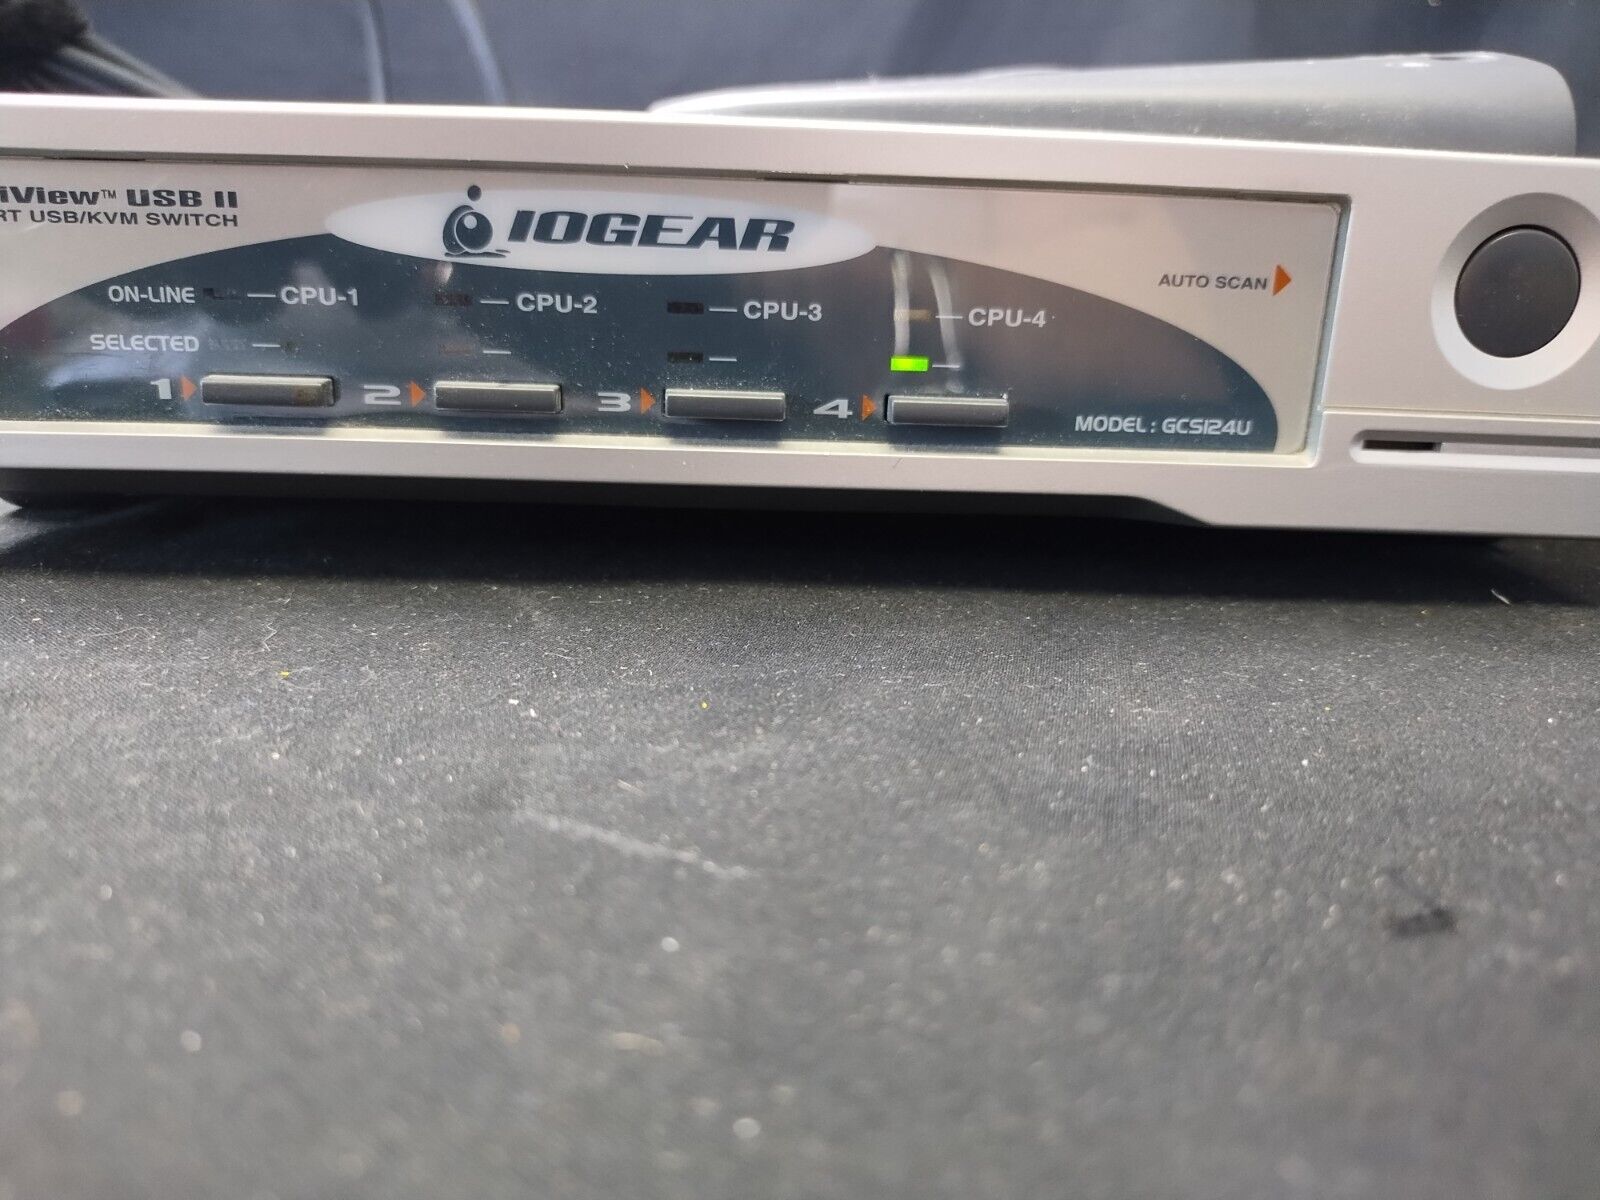 IOGEAR MiniView USBII 4 Port USB/KVM Switch Model GCS124U